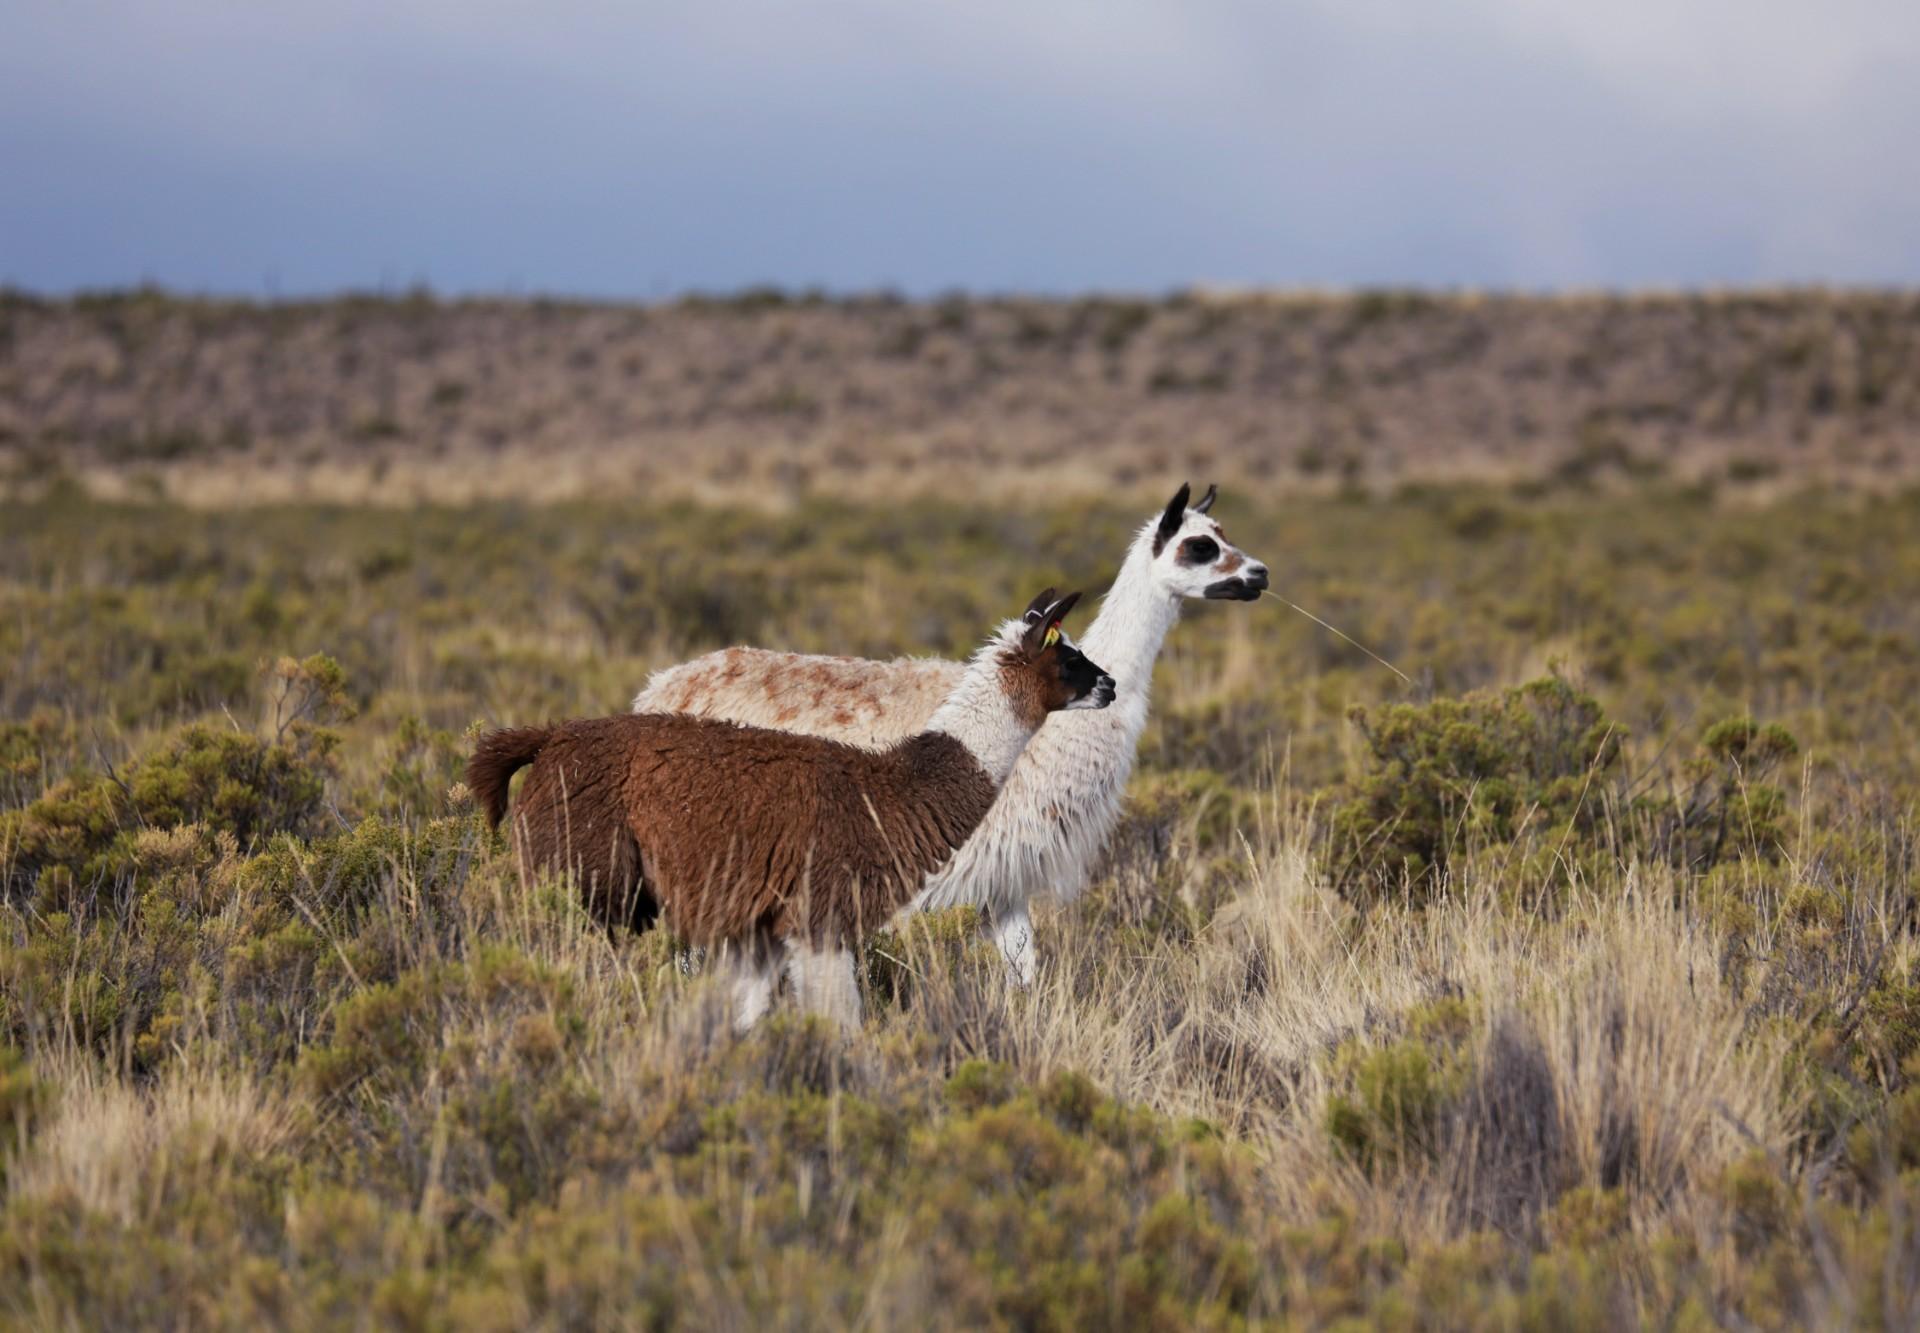 Two llamas in a field.